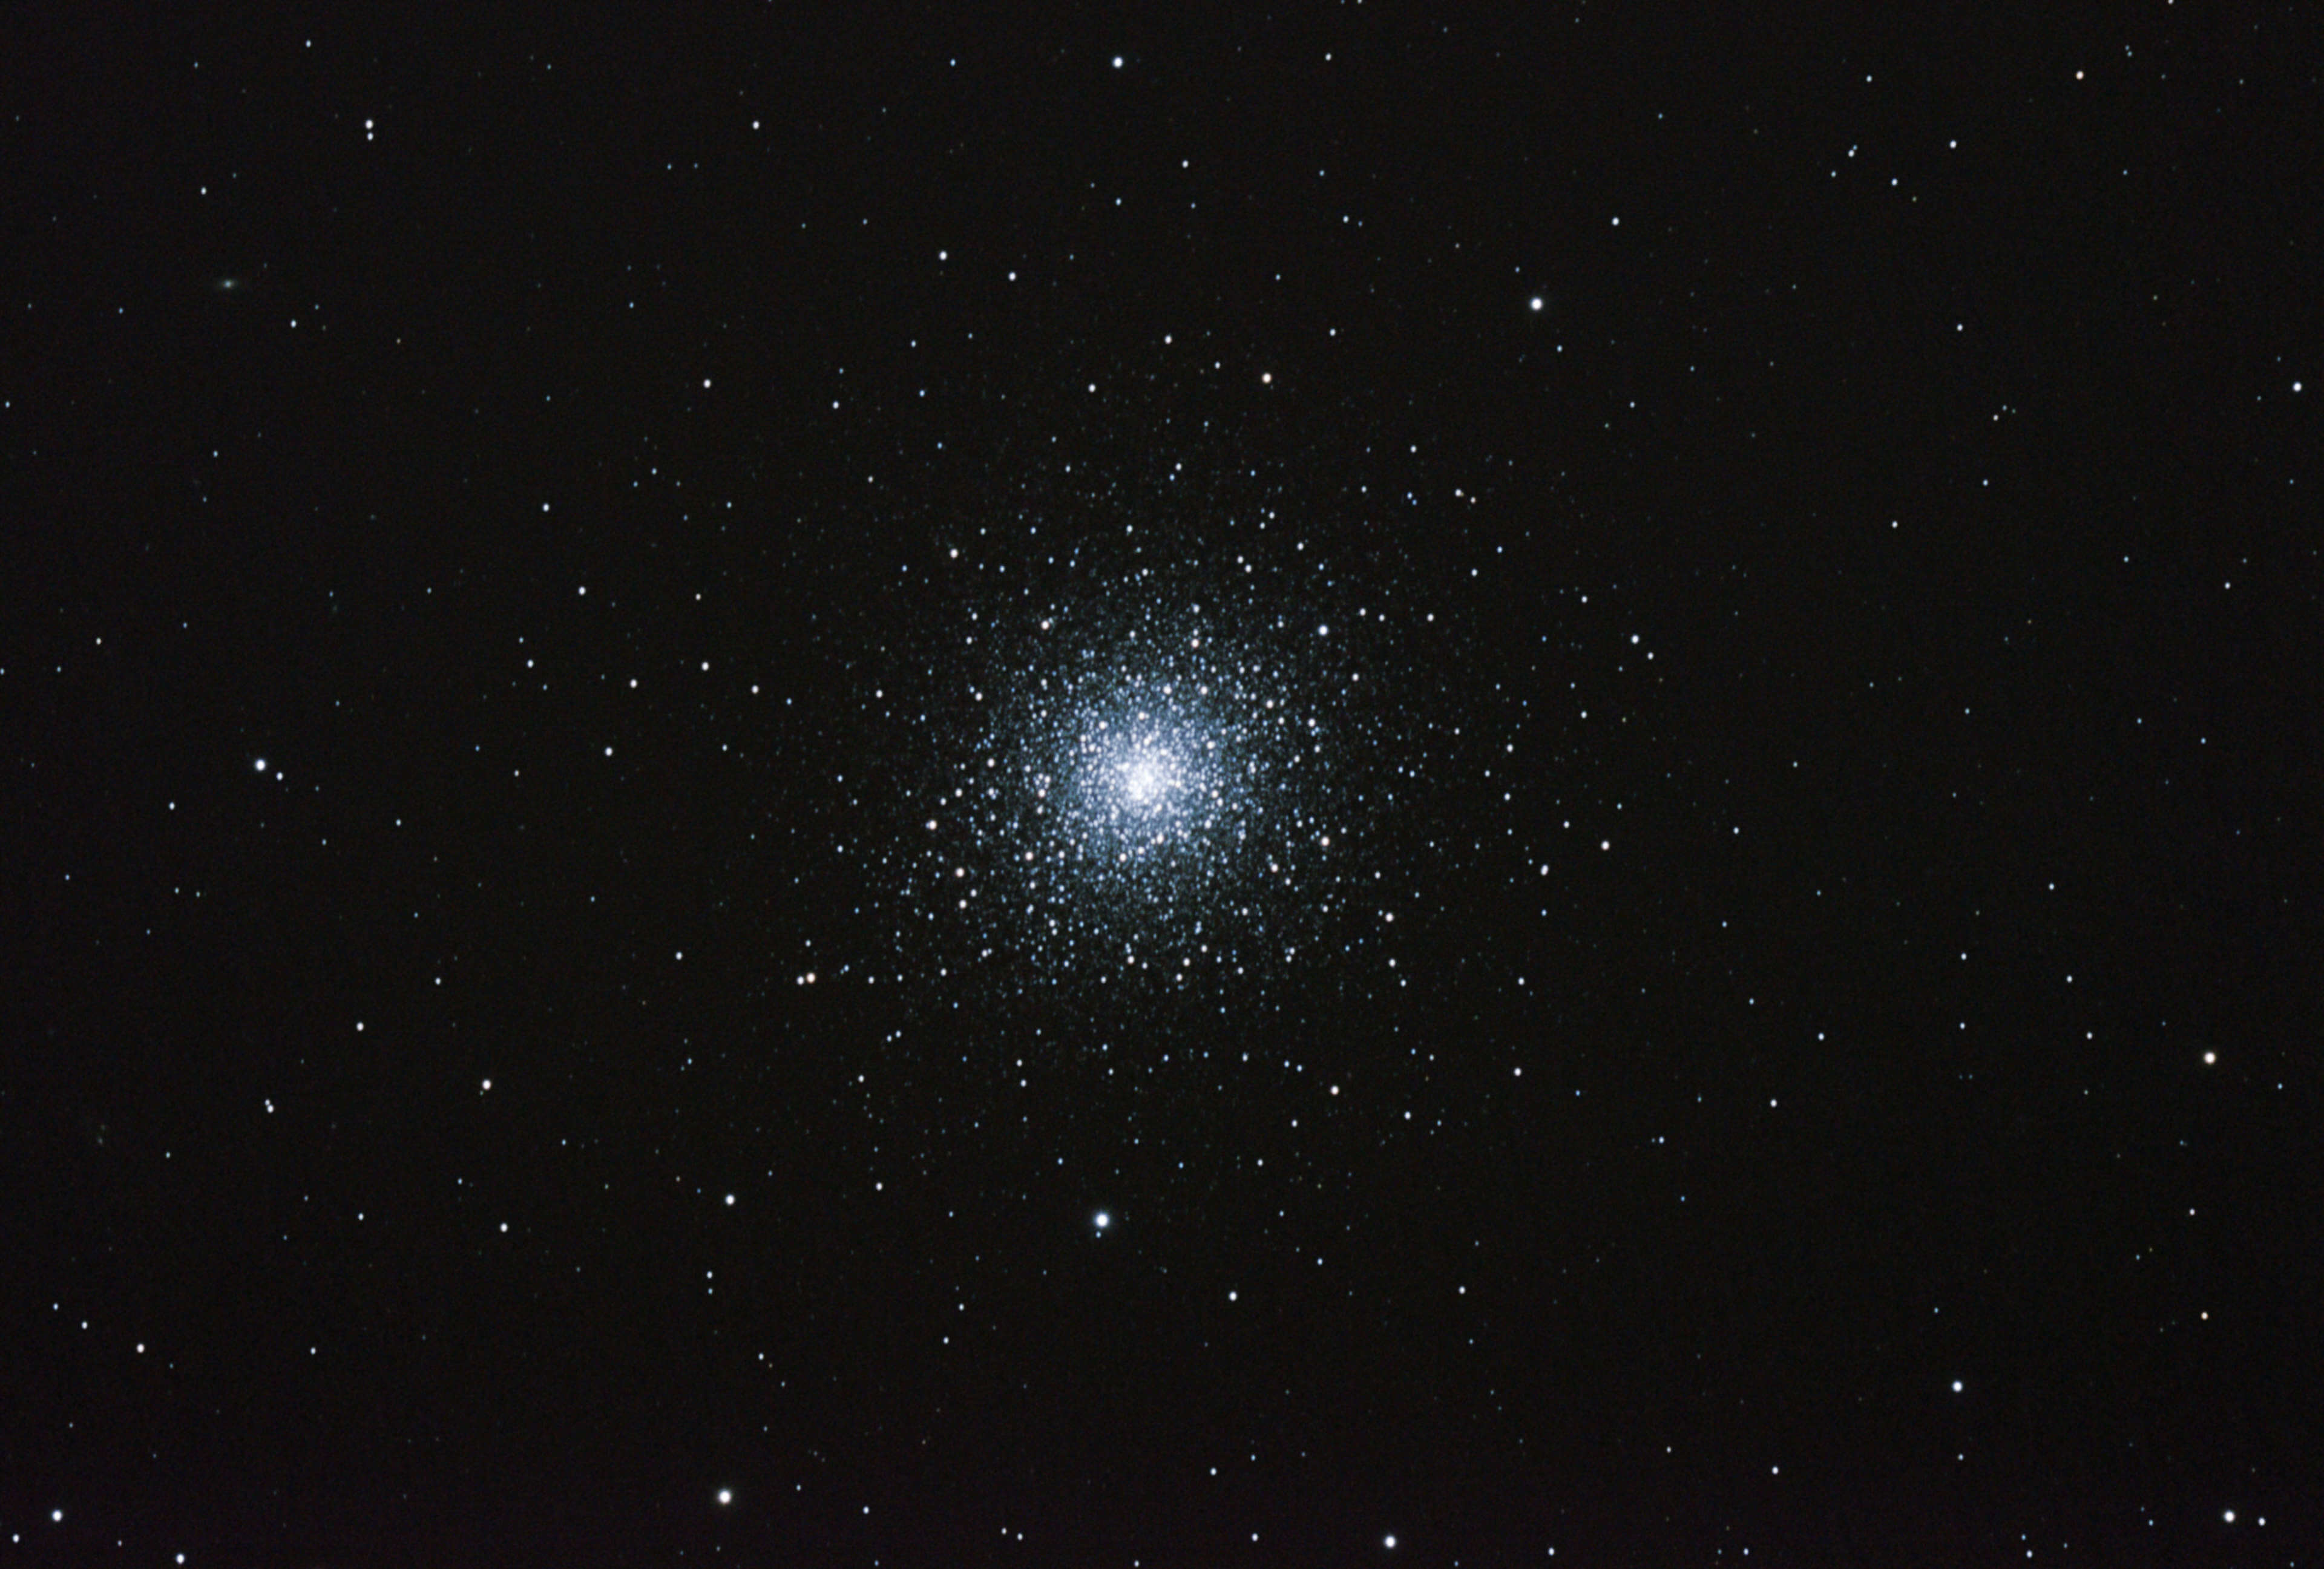 Globular star cluster M92